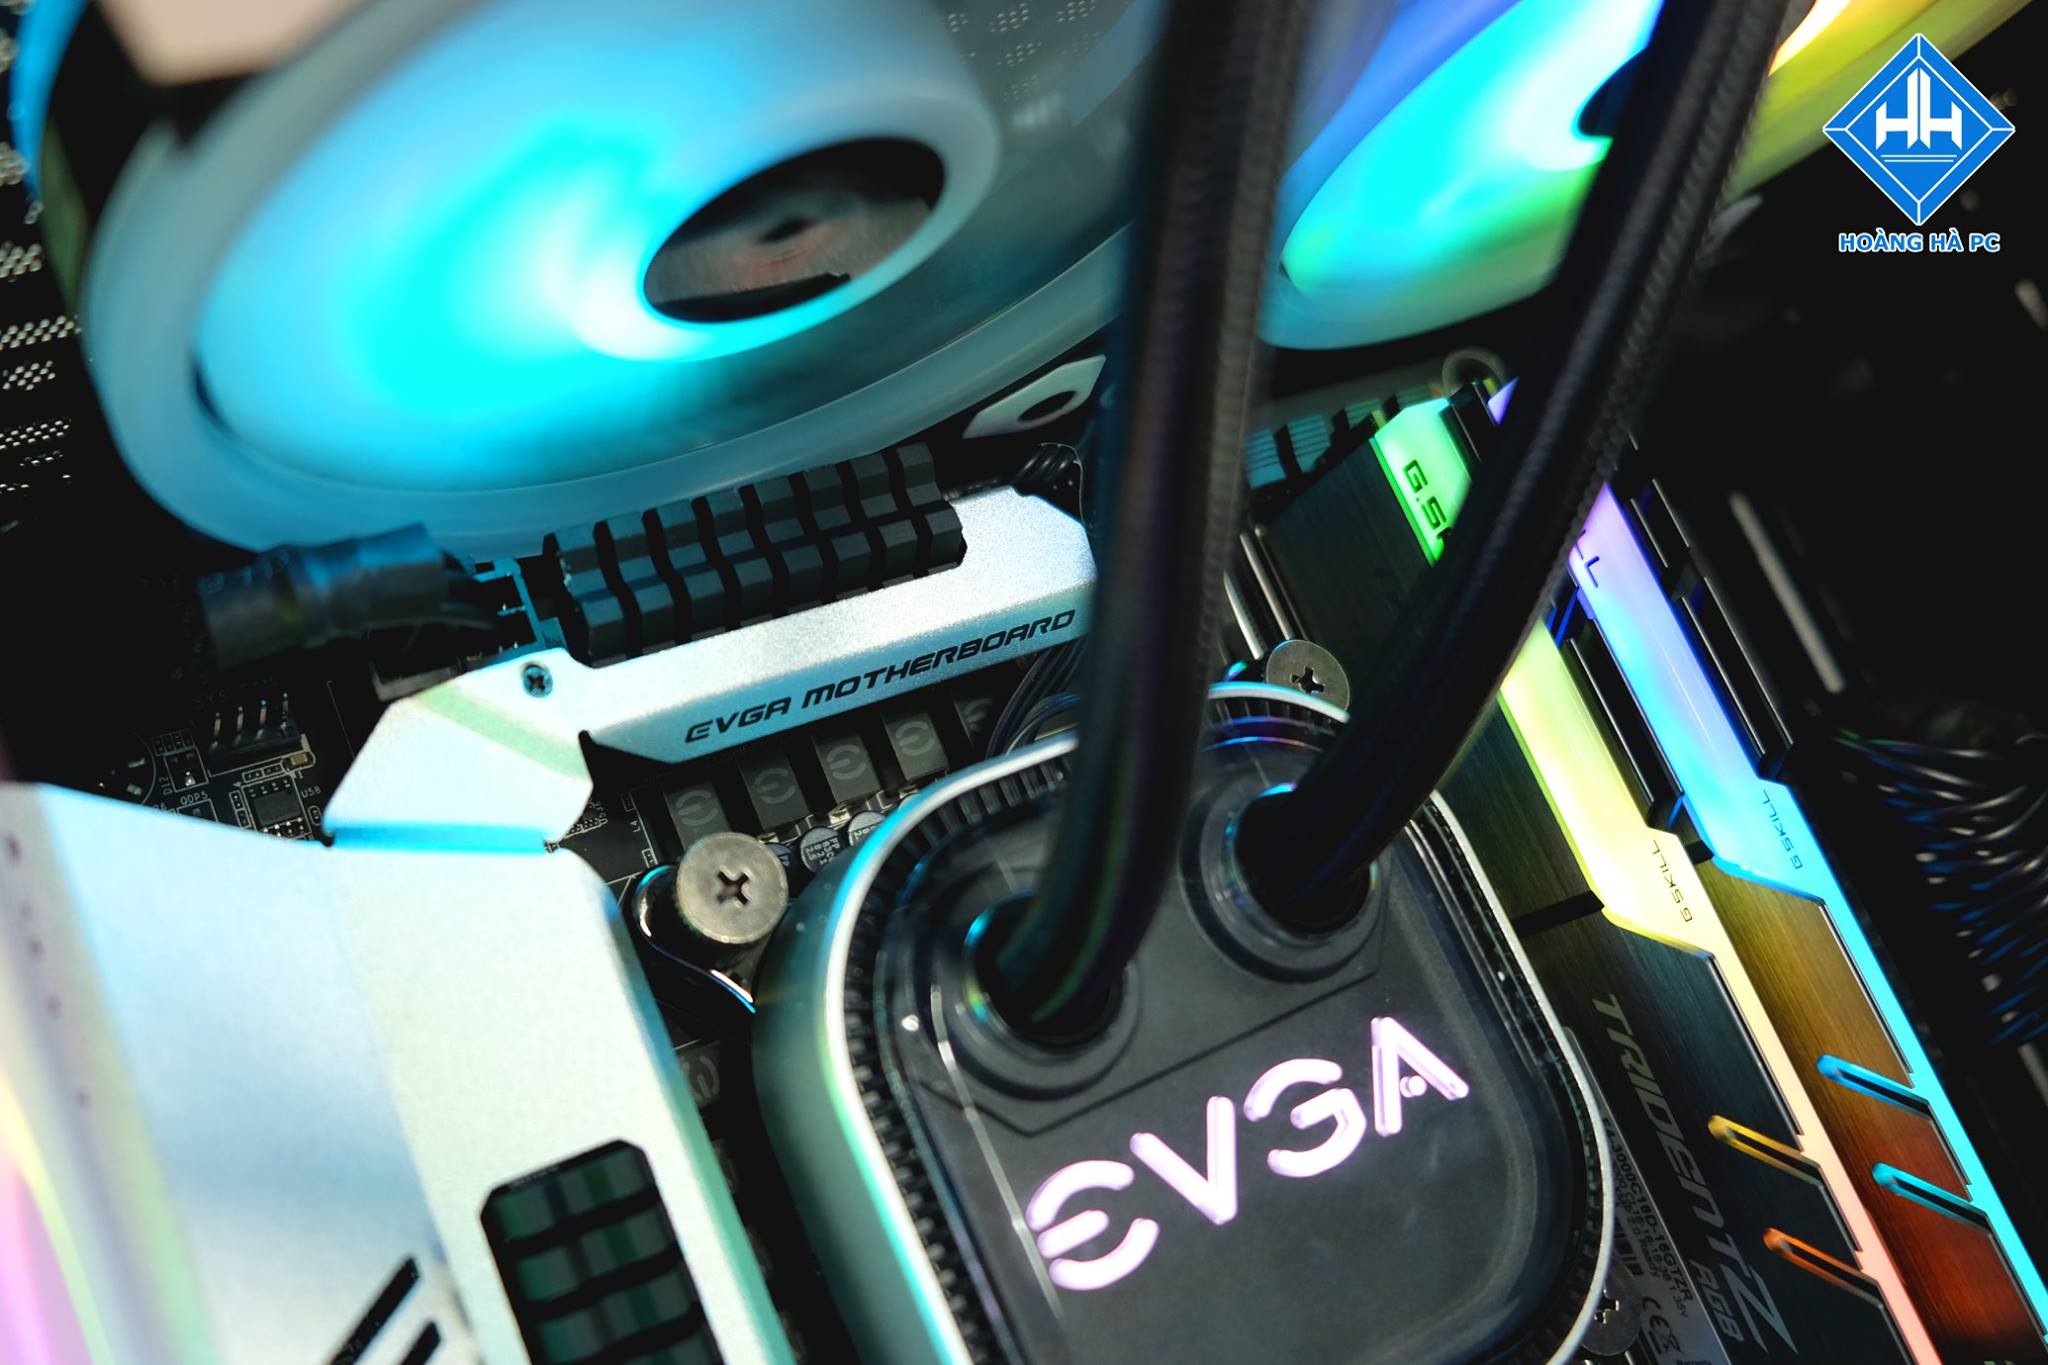 Siêu phẩm RGB tuyệt đẹp với hầu hết các linh kiện từ hãng EVGA danh tiếng